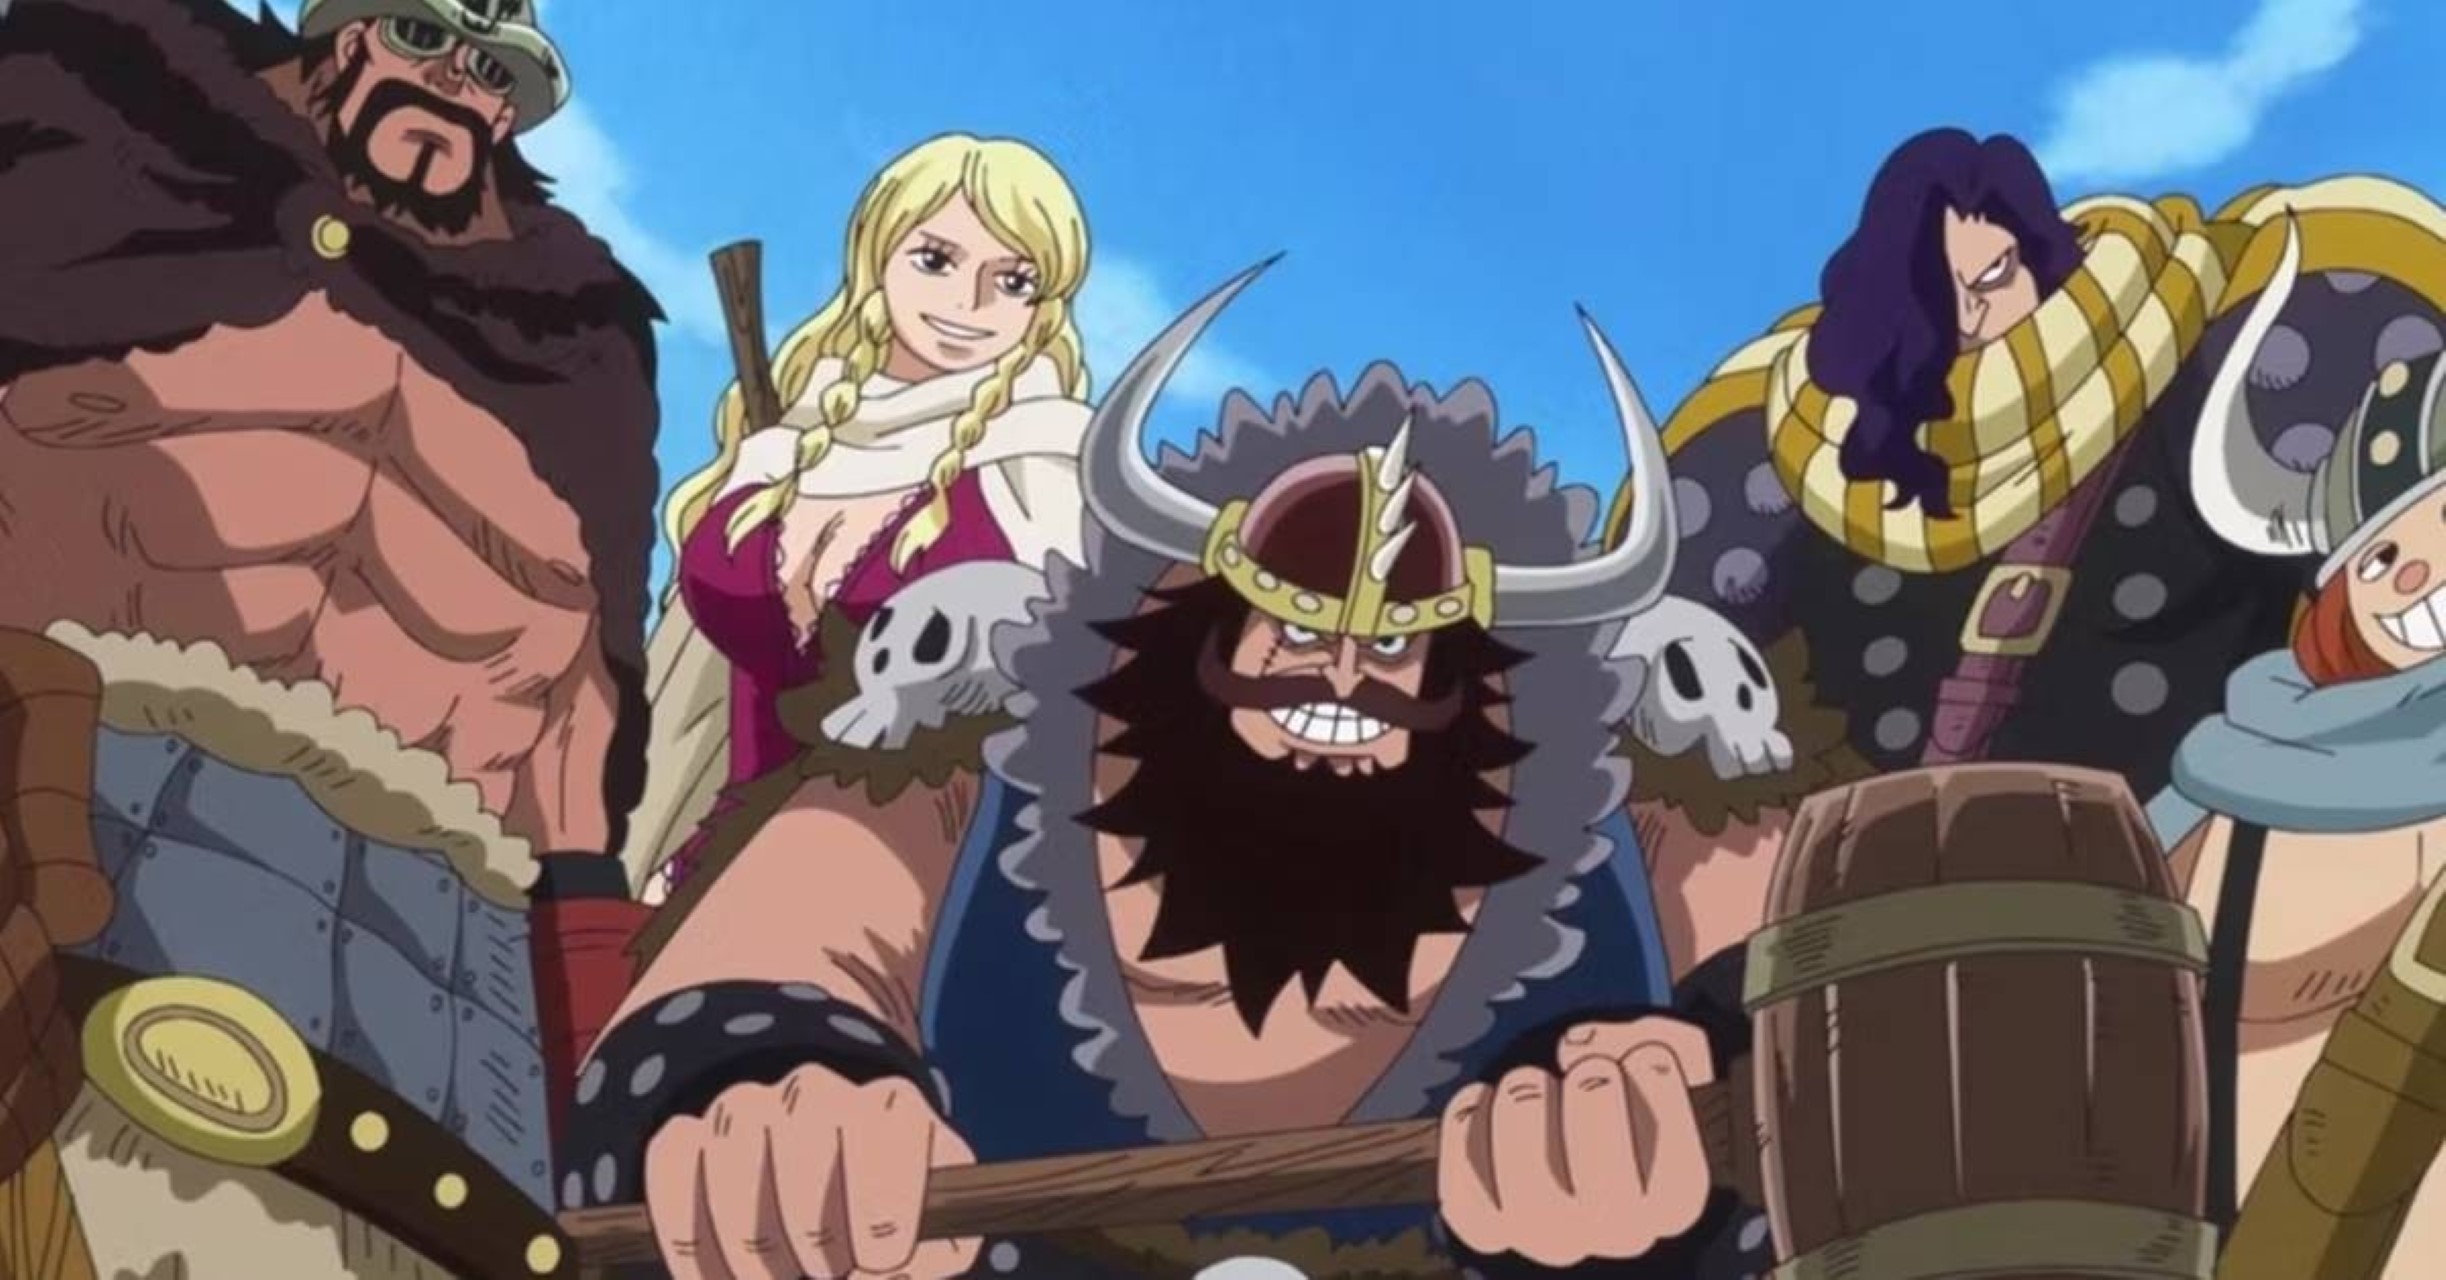 Descubra as origens pirata e viking dos navios da série 'One Piece